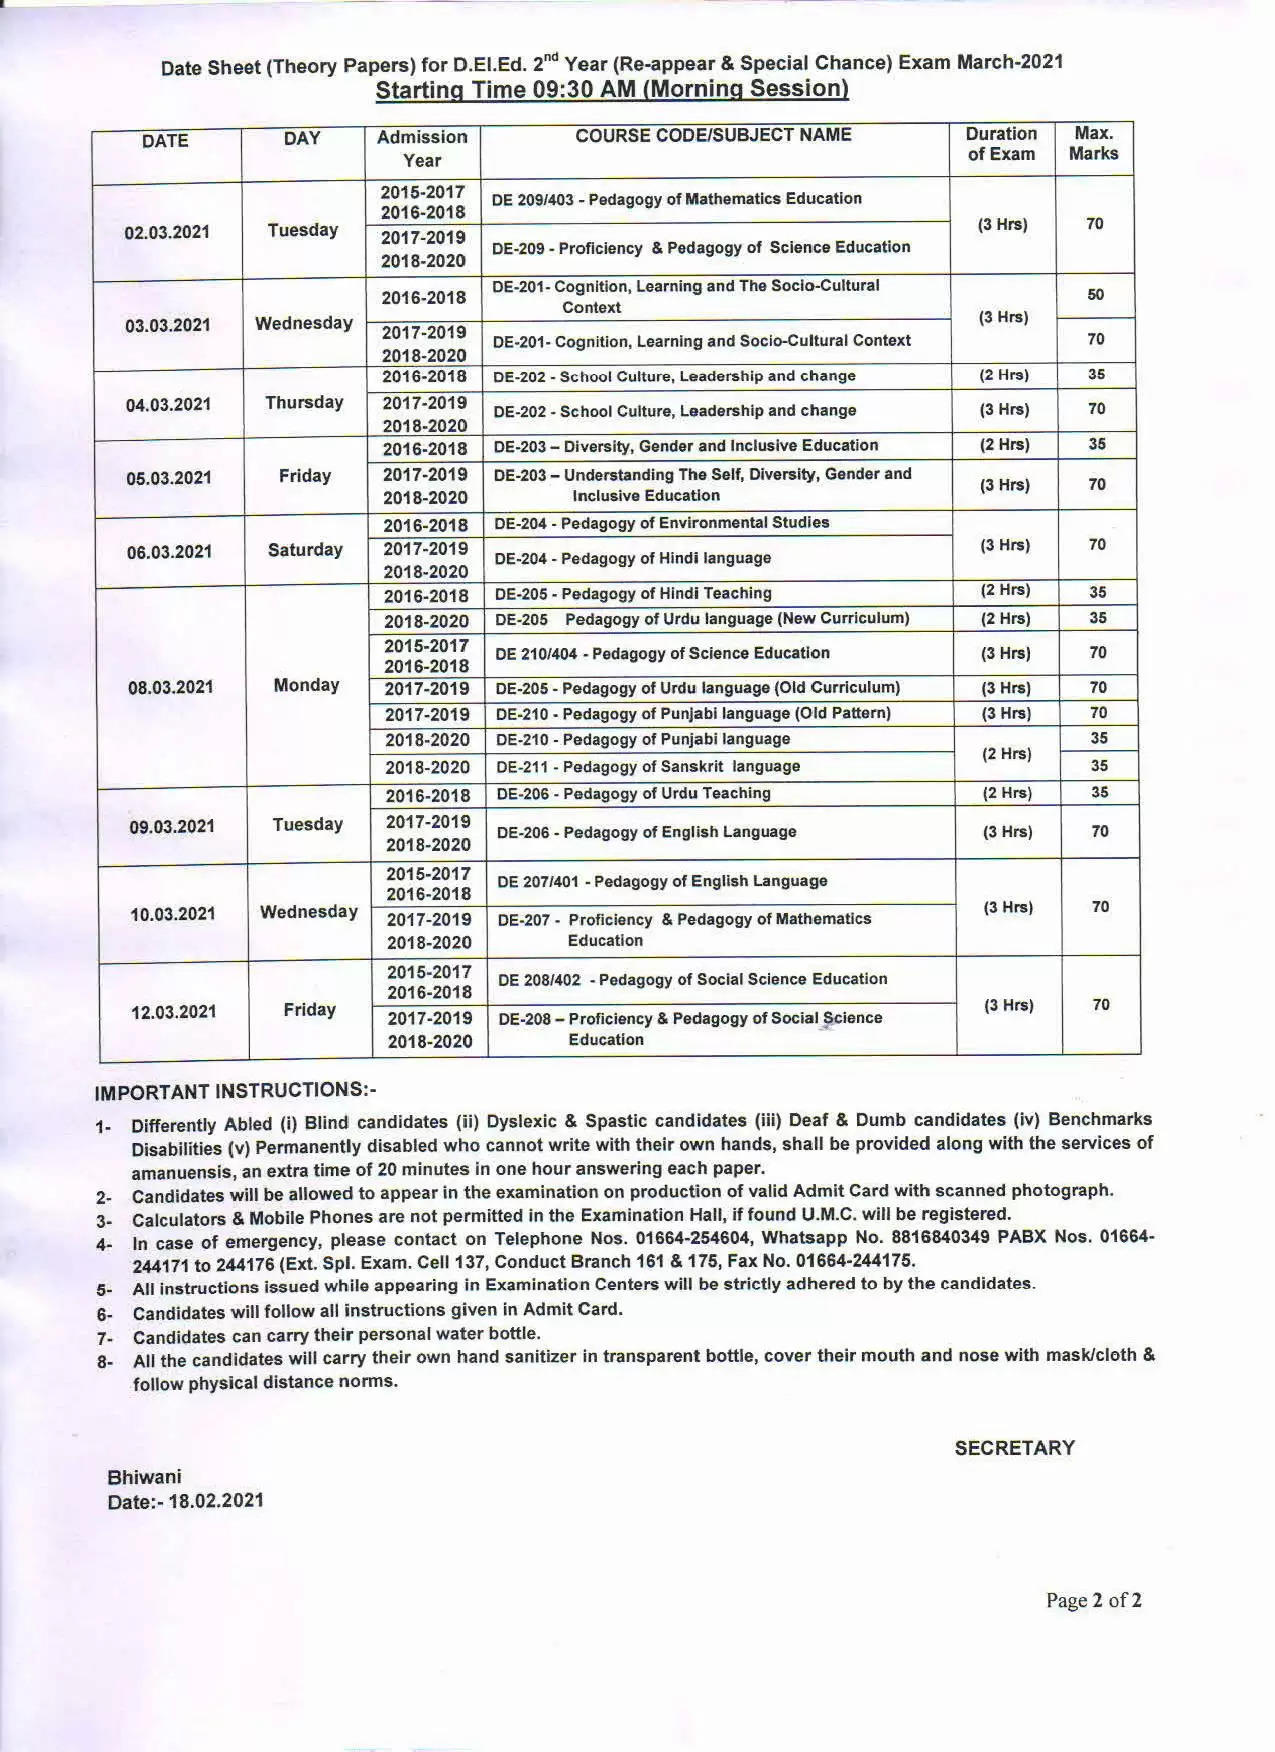 हरियाणा में डी.एड./डी.एल.एड. की परीक्षाओं की तारीख घोषित, देखिये डेटशीट